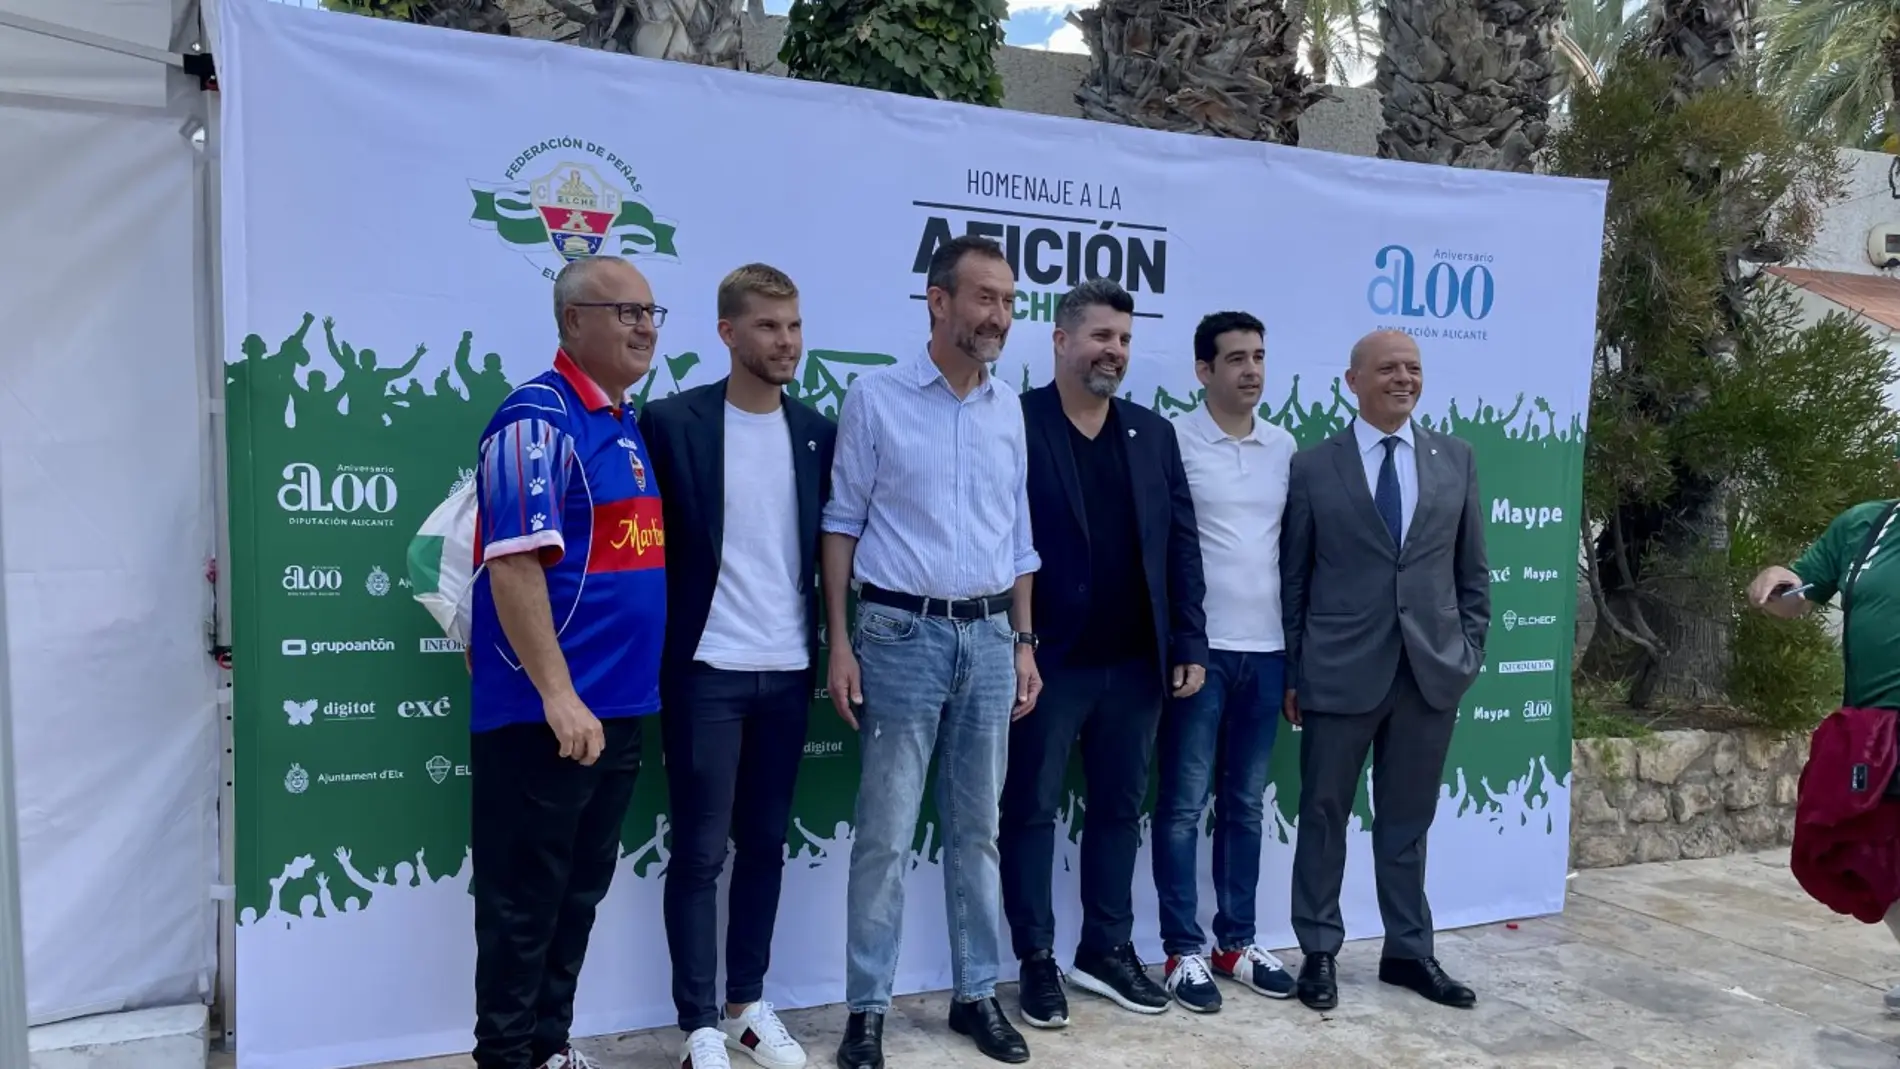 Vicente Alberola, Pedro Schinocca, Carlos González, Christian Bragarnik, David Aranda y Joaquín Buitrago